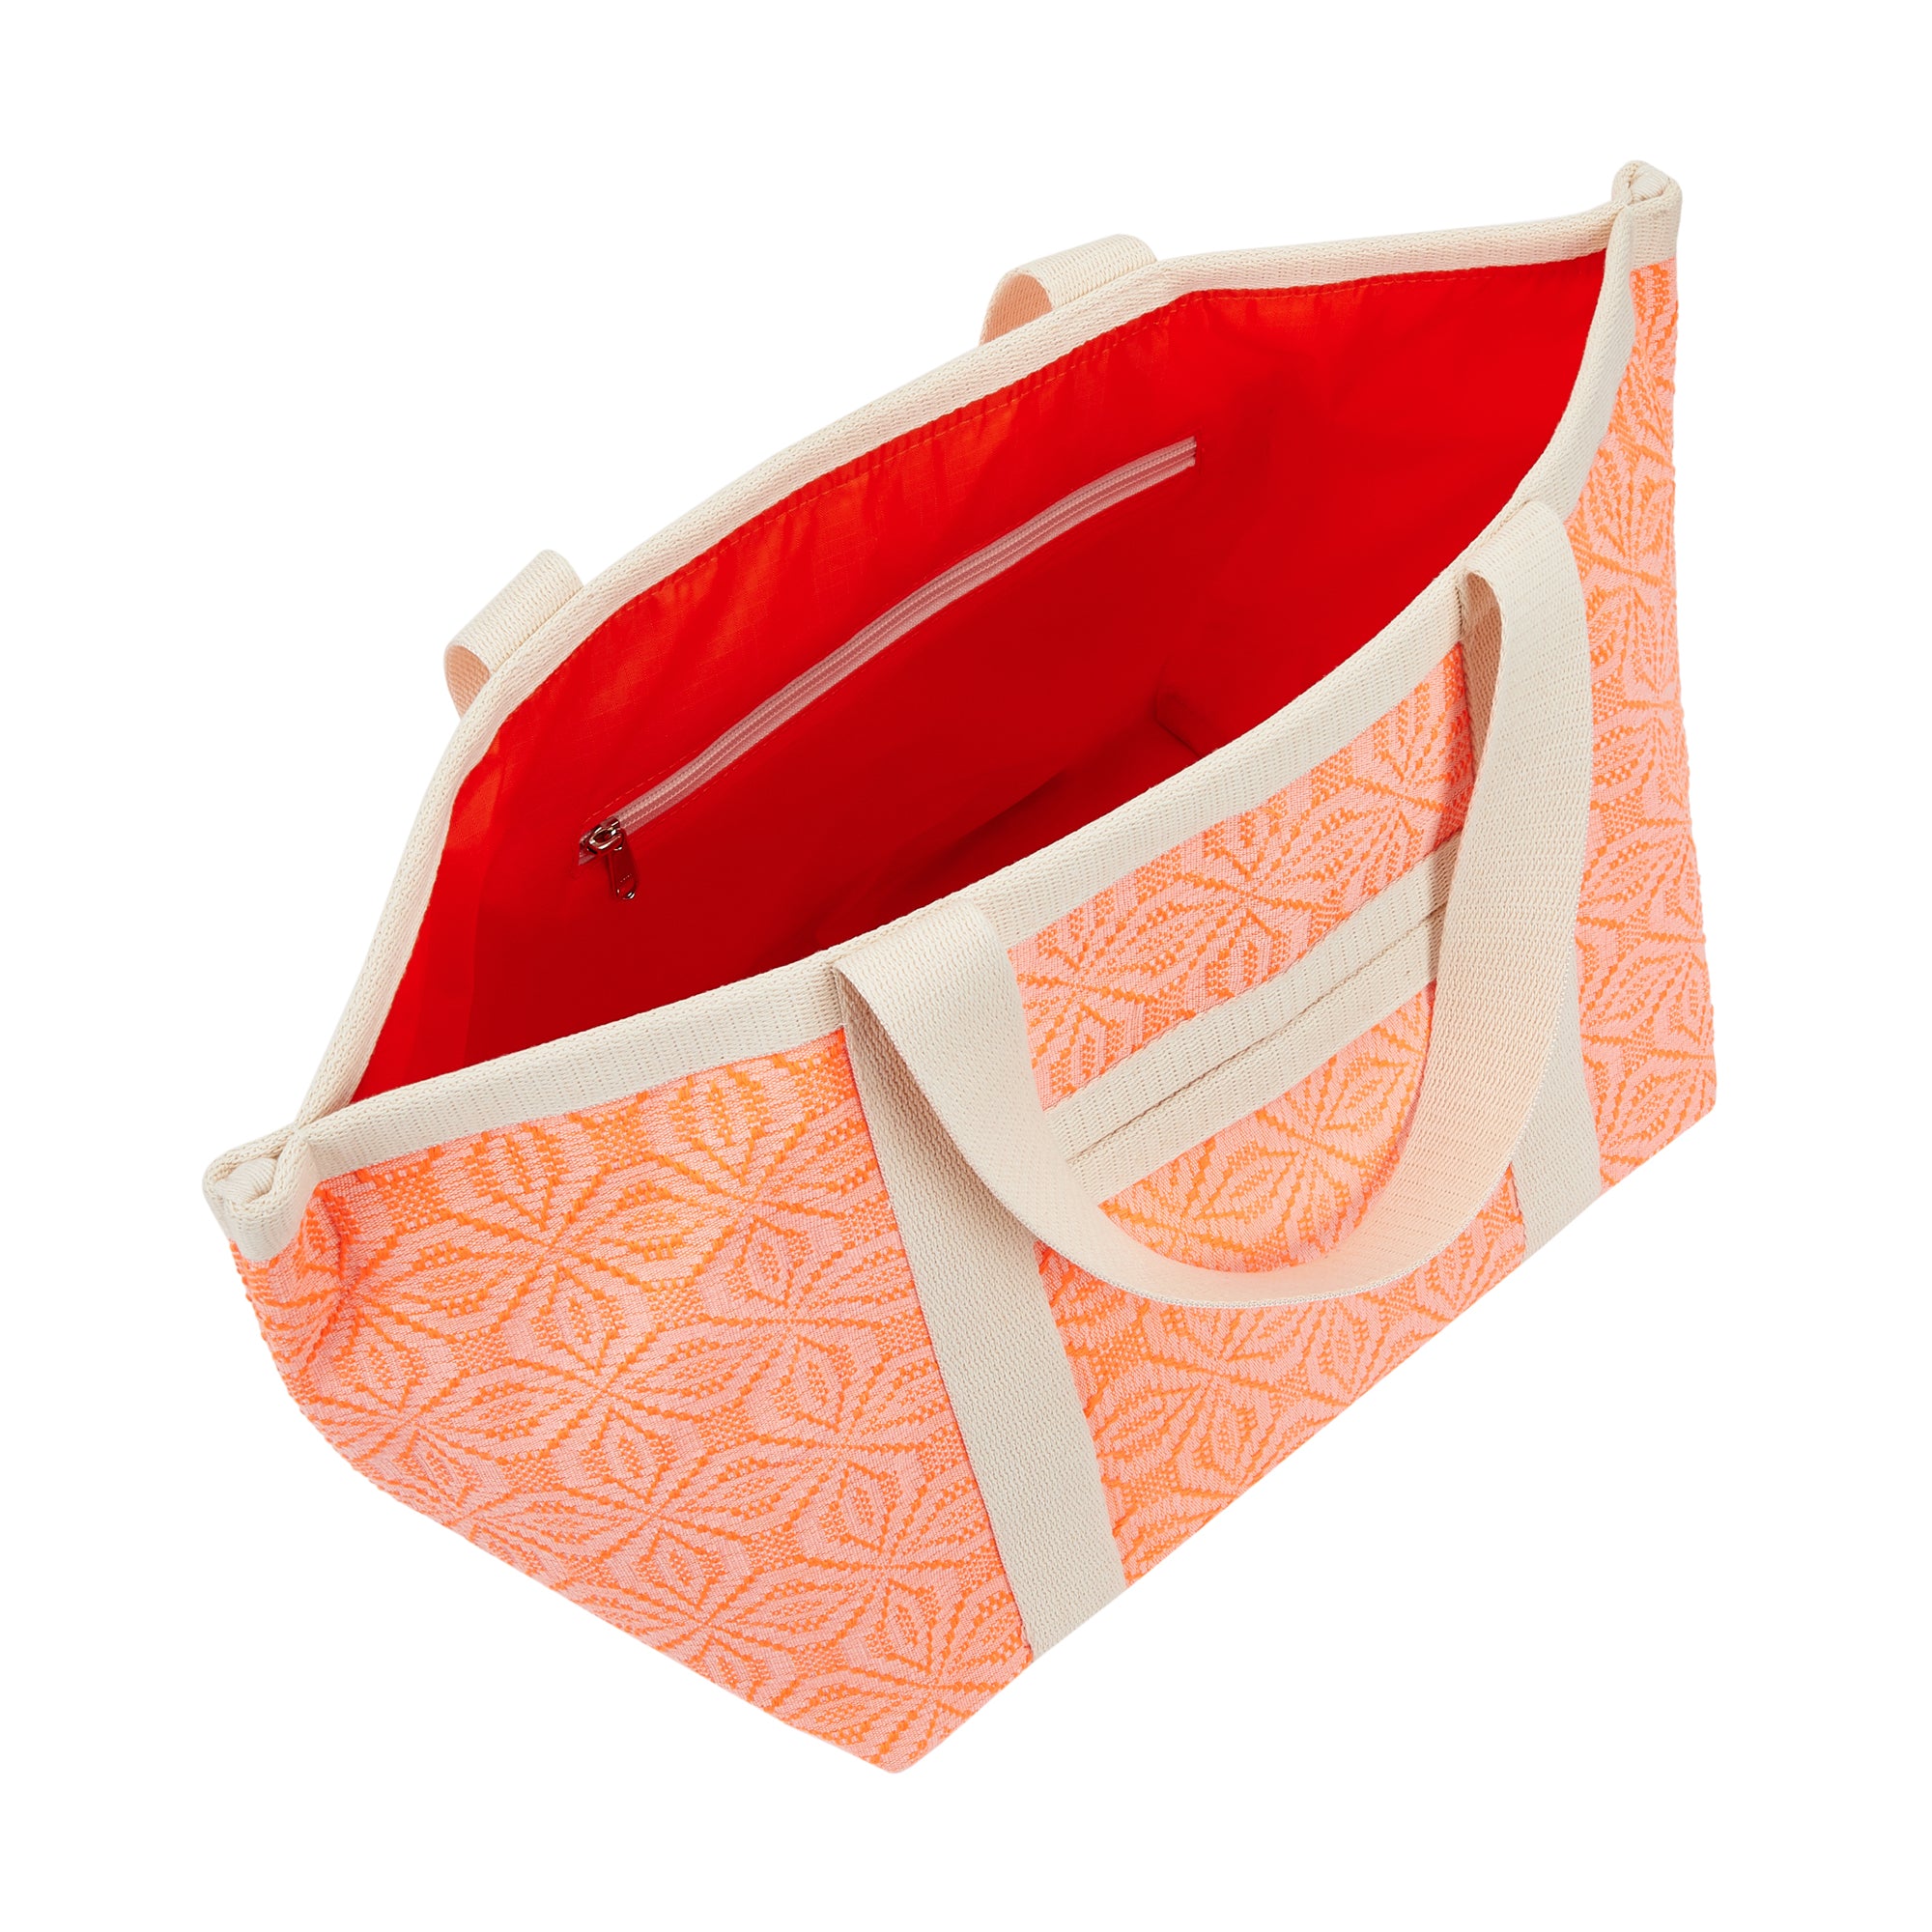 Neon Orange Lollipop Hand Bag